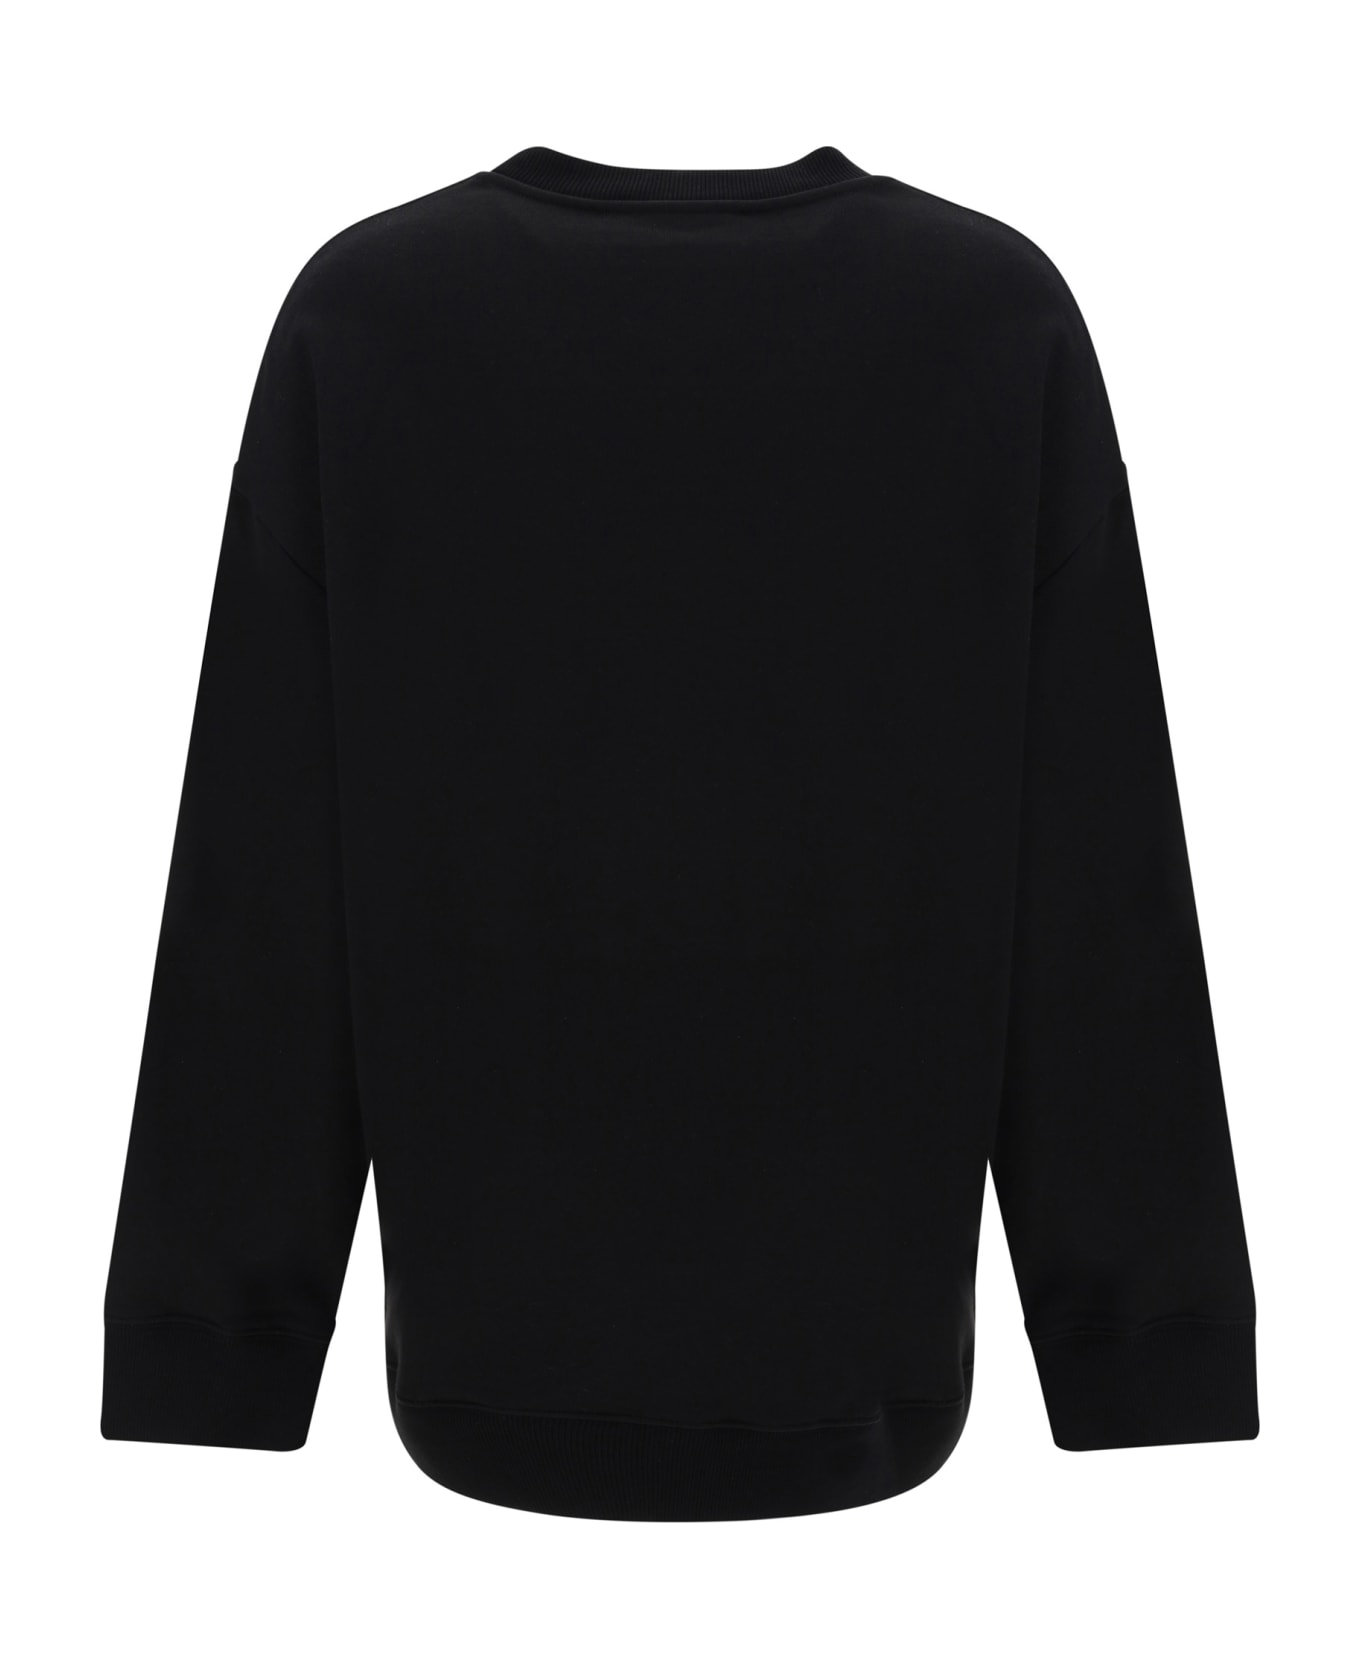 Stella McCartney Rhinestone Sweatshirt - Black フリース